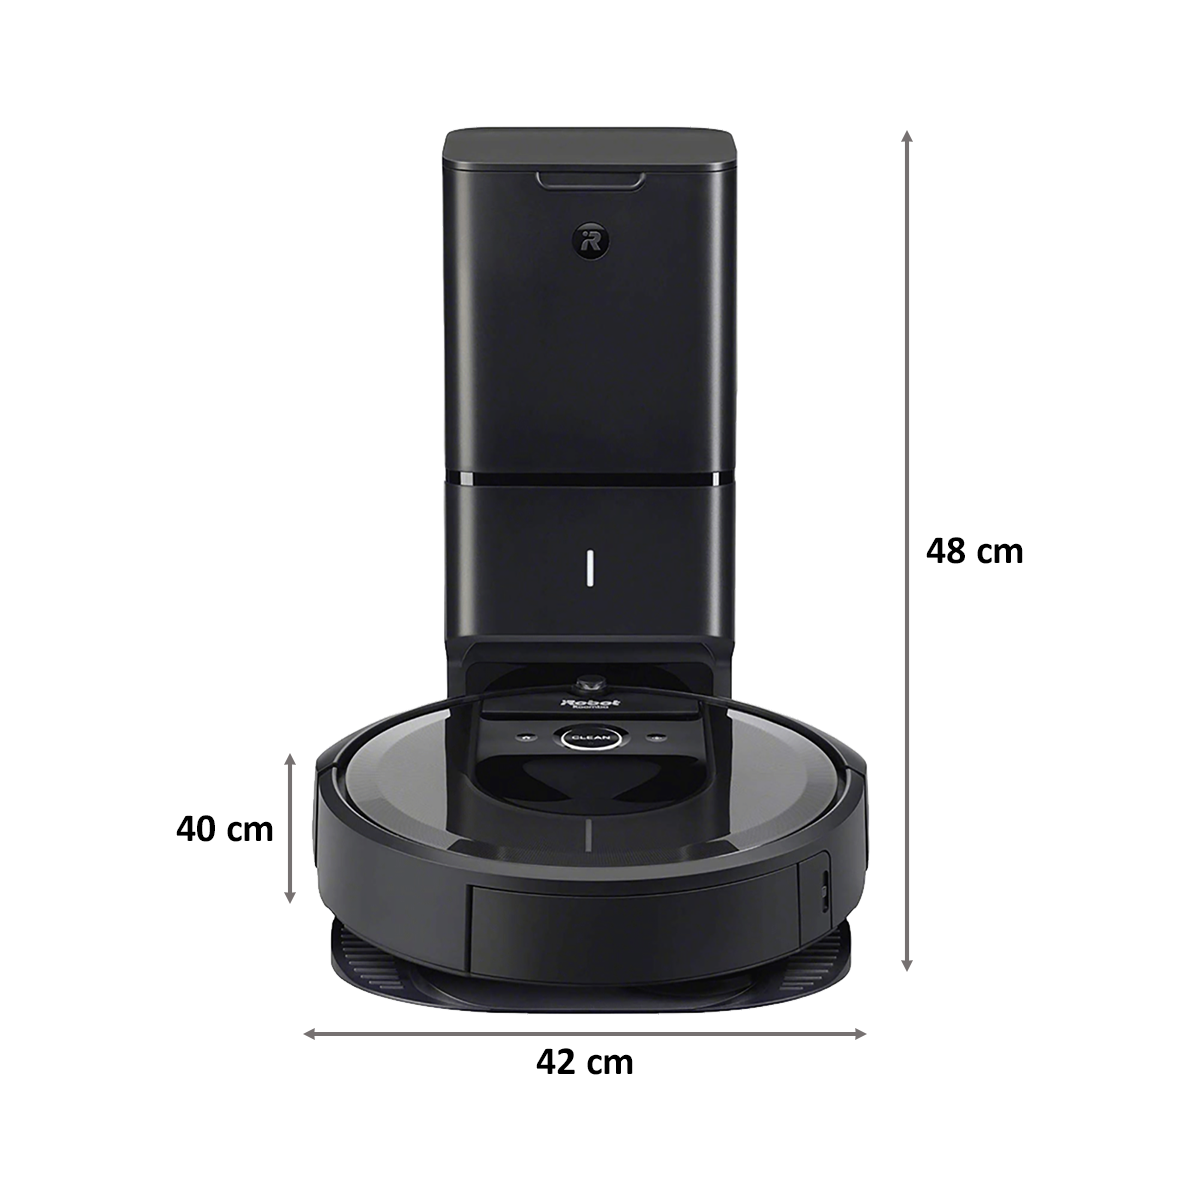 iRobot Roomba Robotic Vacuum Cleaner (i7 Plus i7558, Black)